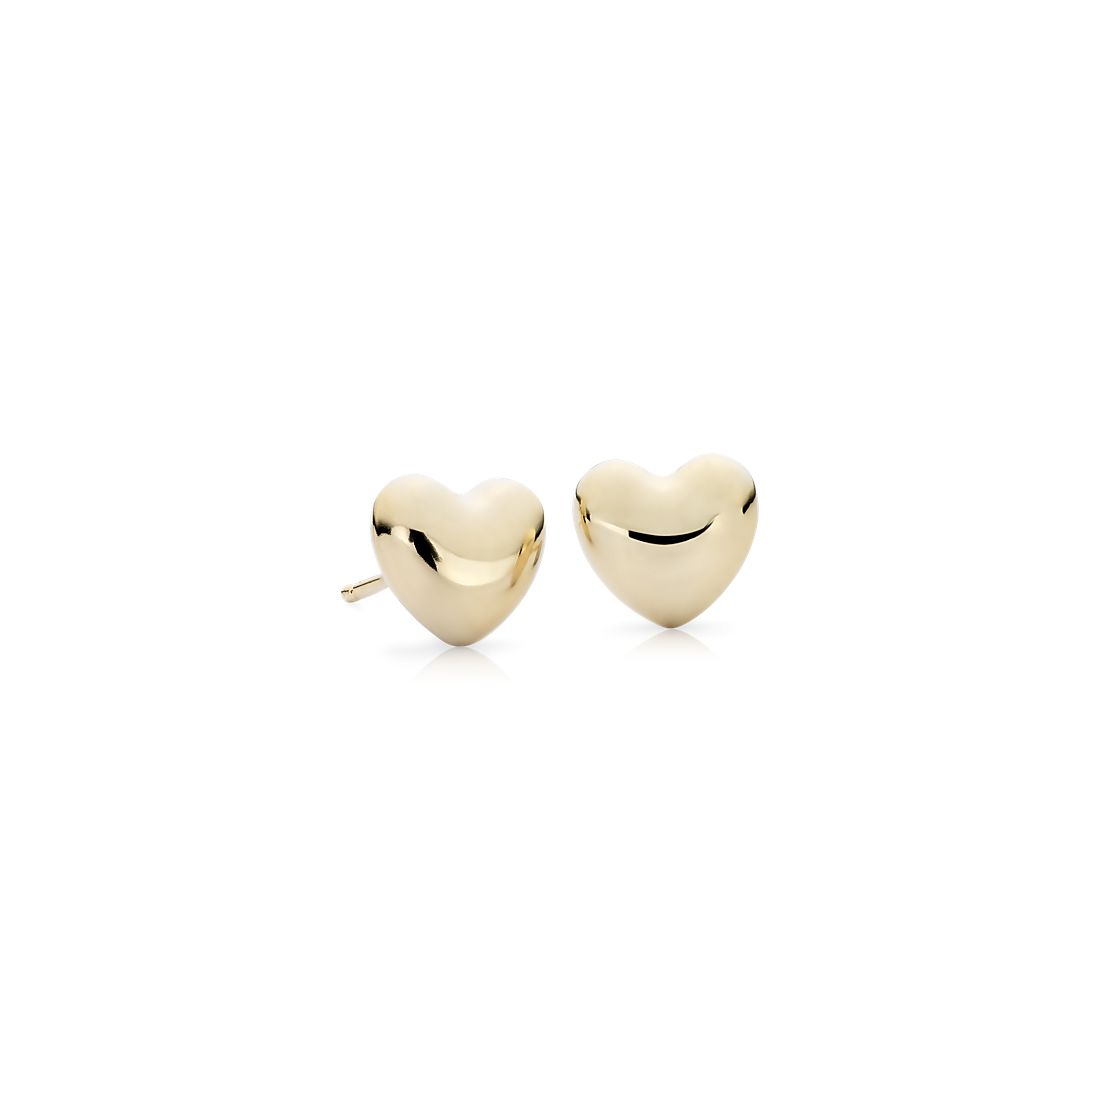 Puff Heart Stud Earrings in 14k Yellow Gold